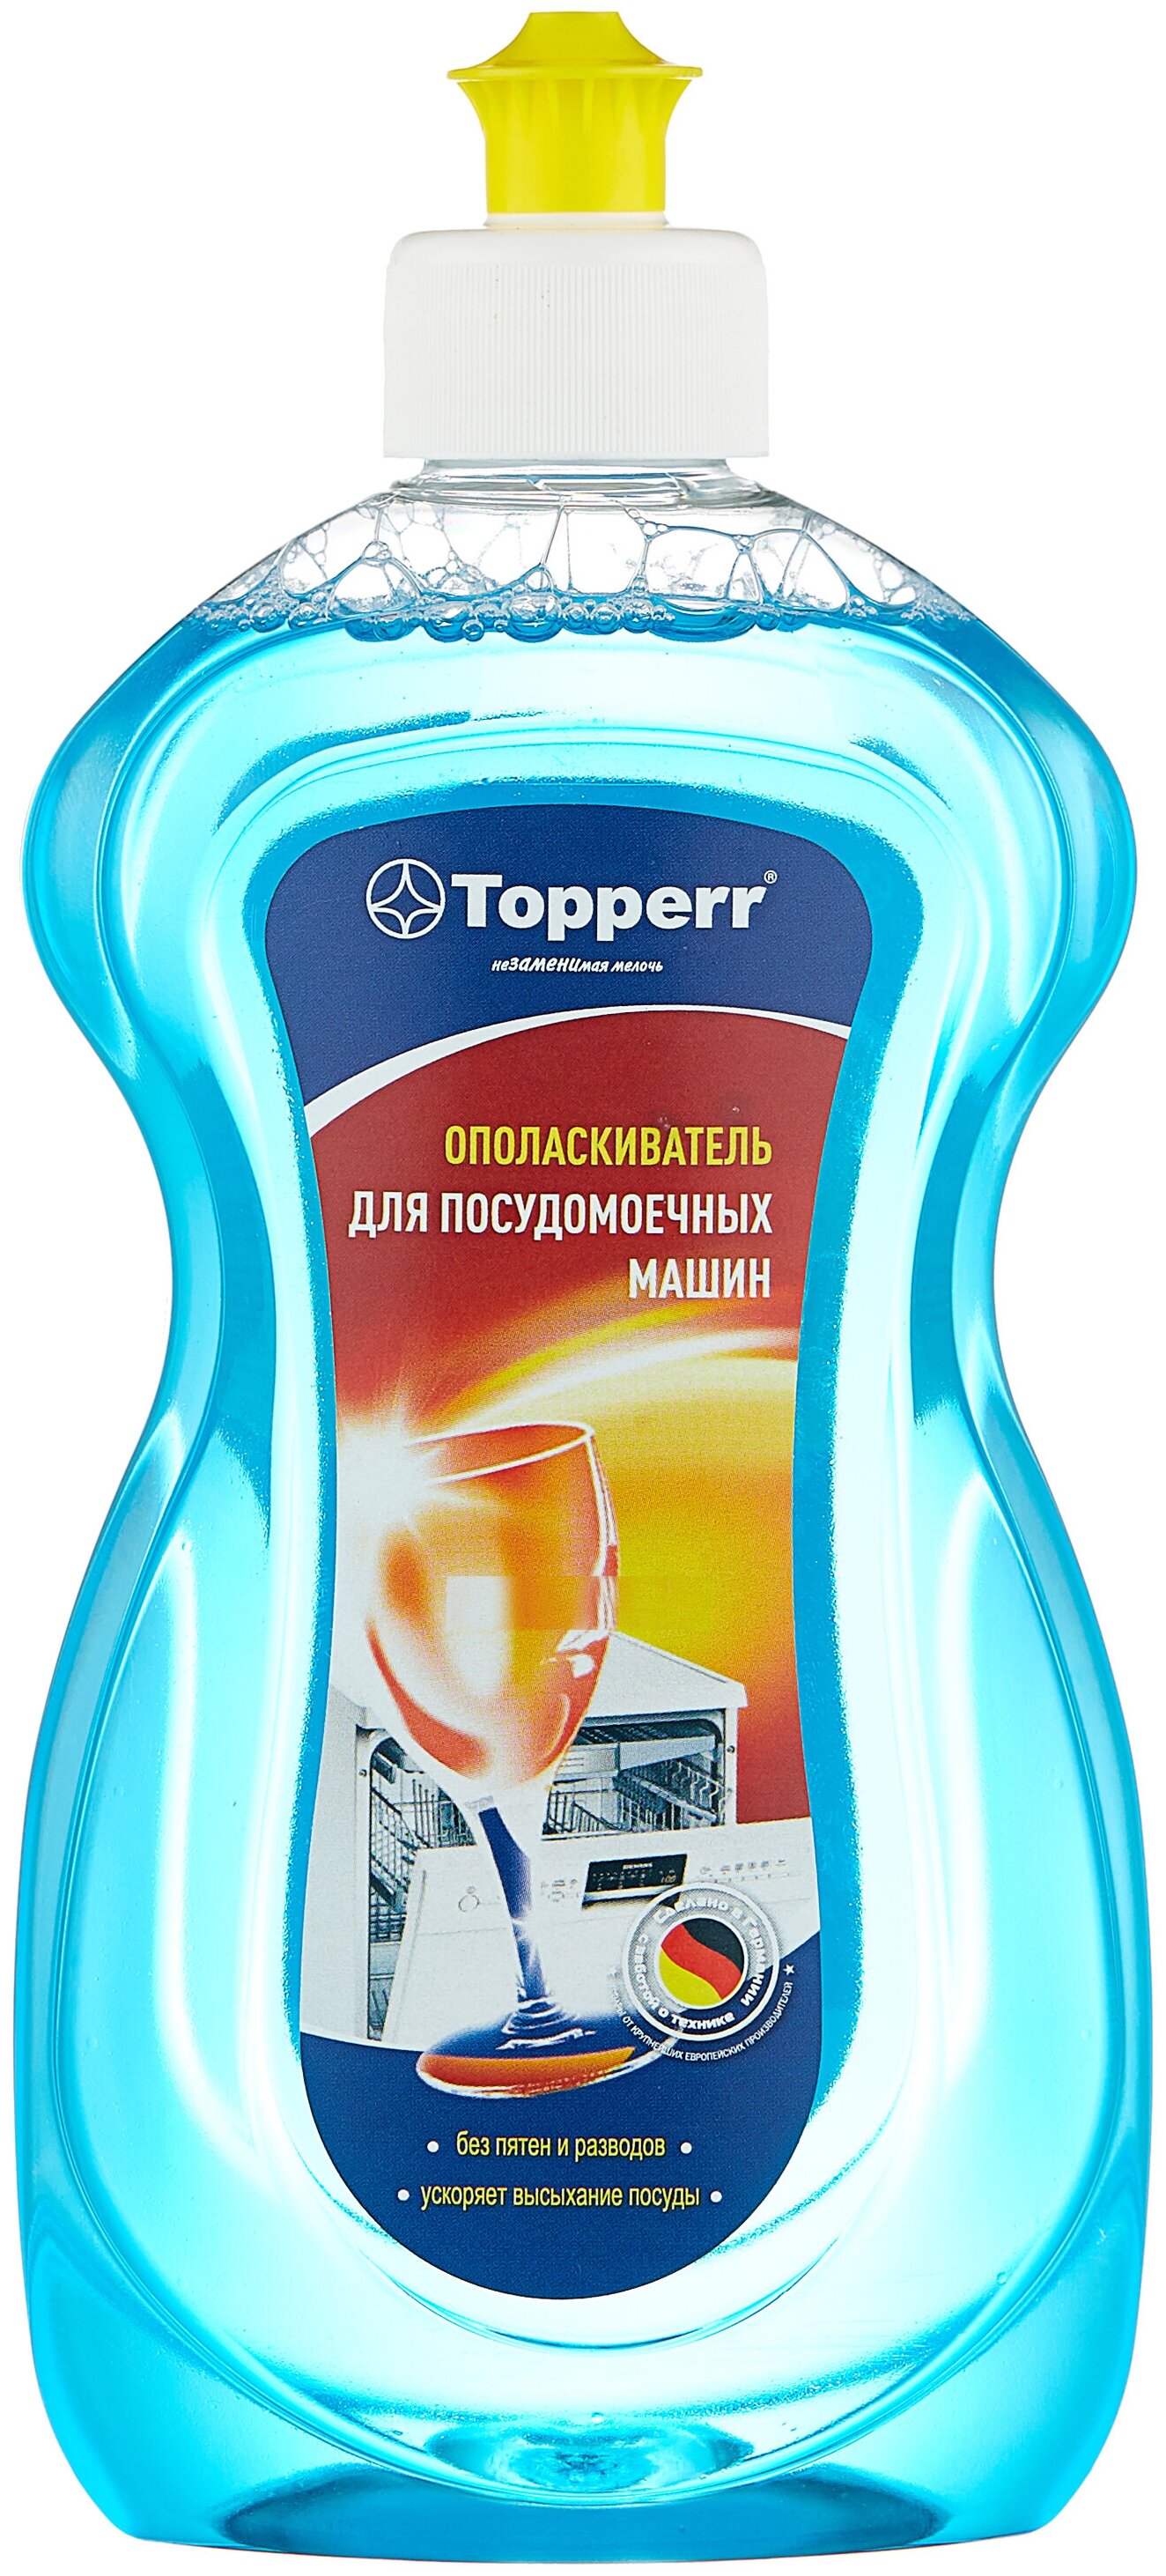 Ополаскиватель для посудомоечных машин Topperr (3301) 500мл.